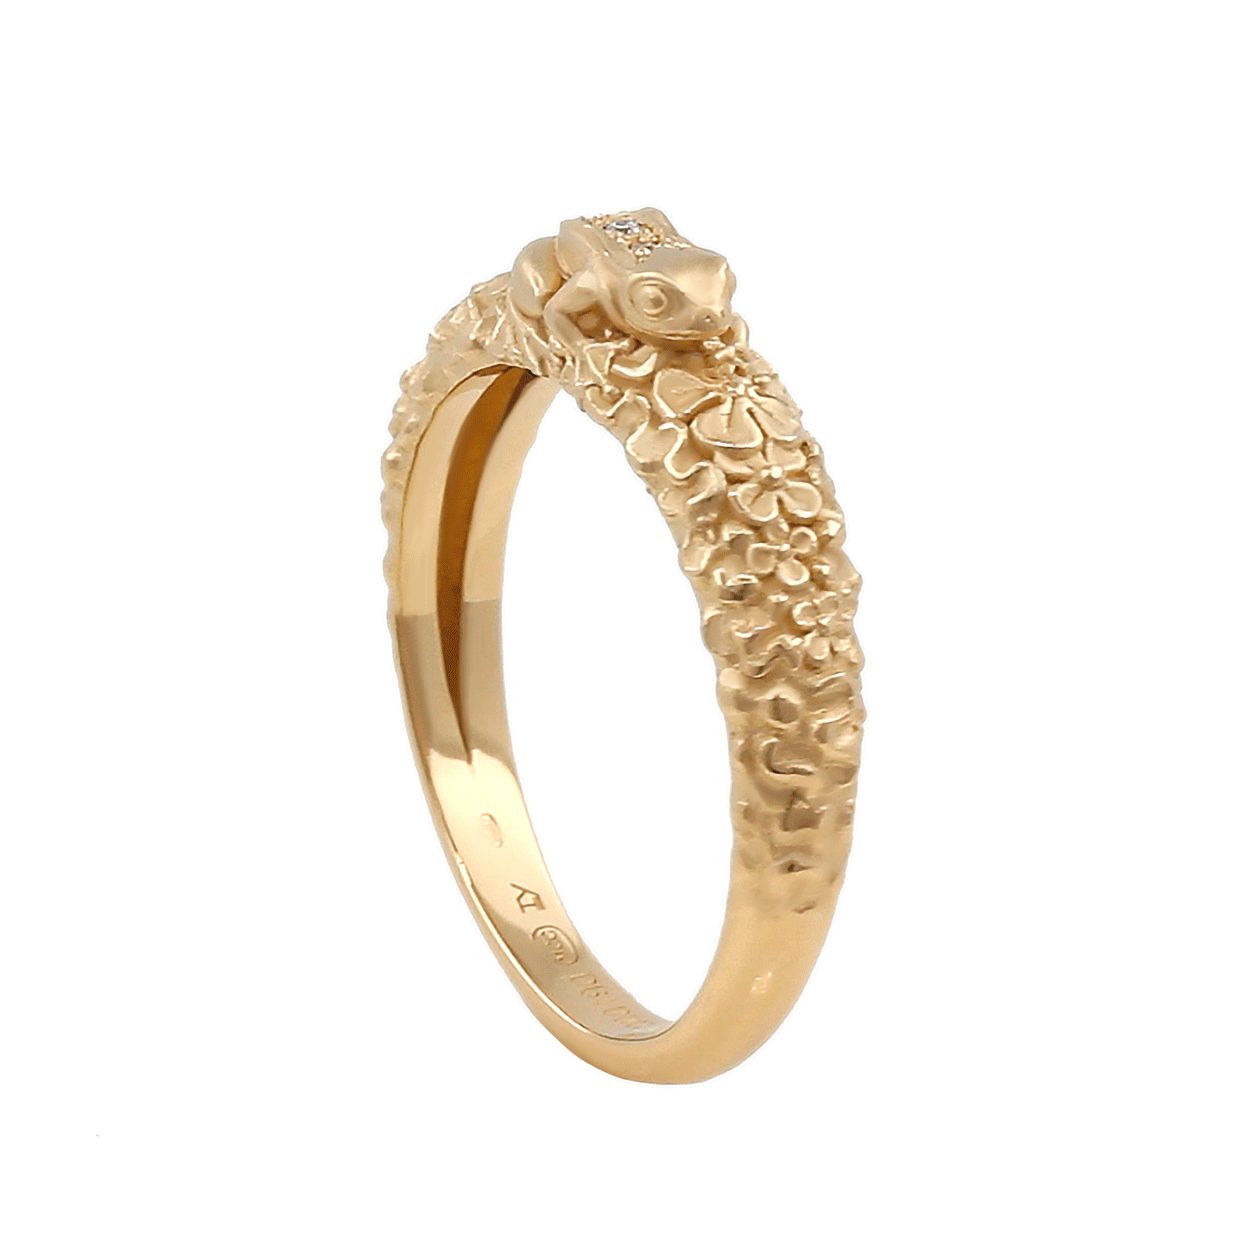 Gold Ring “KAERU” - Manuel Carrera Cordon